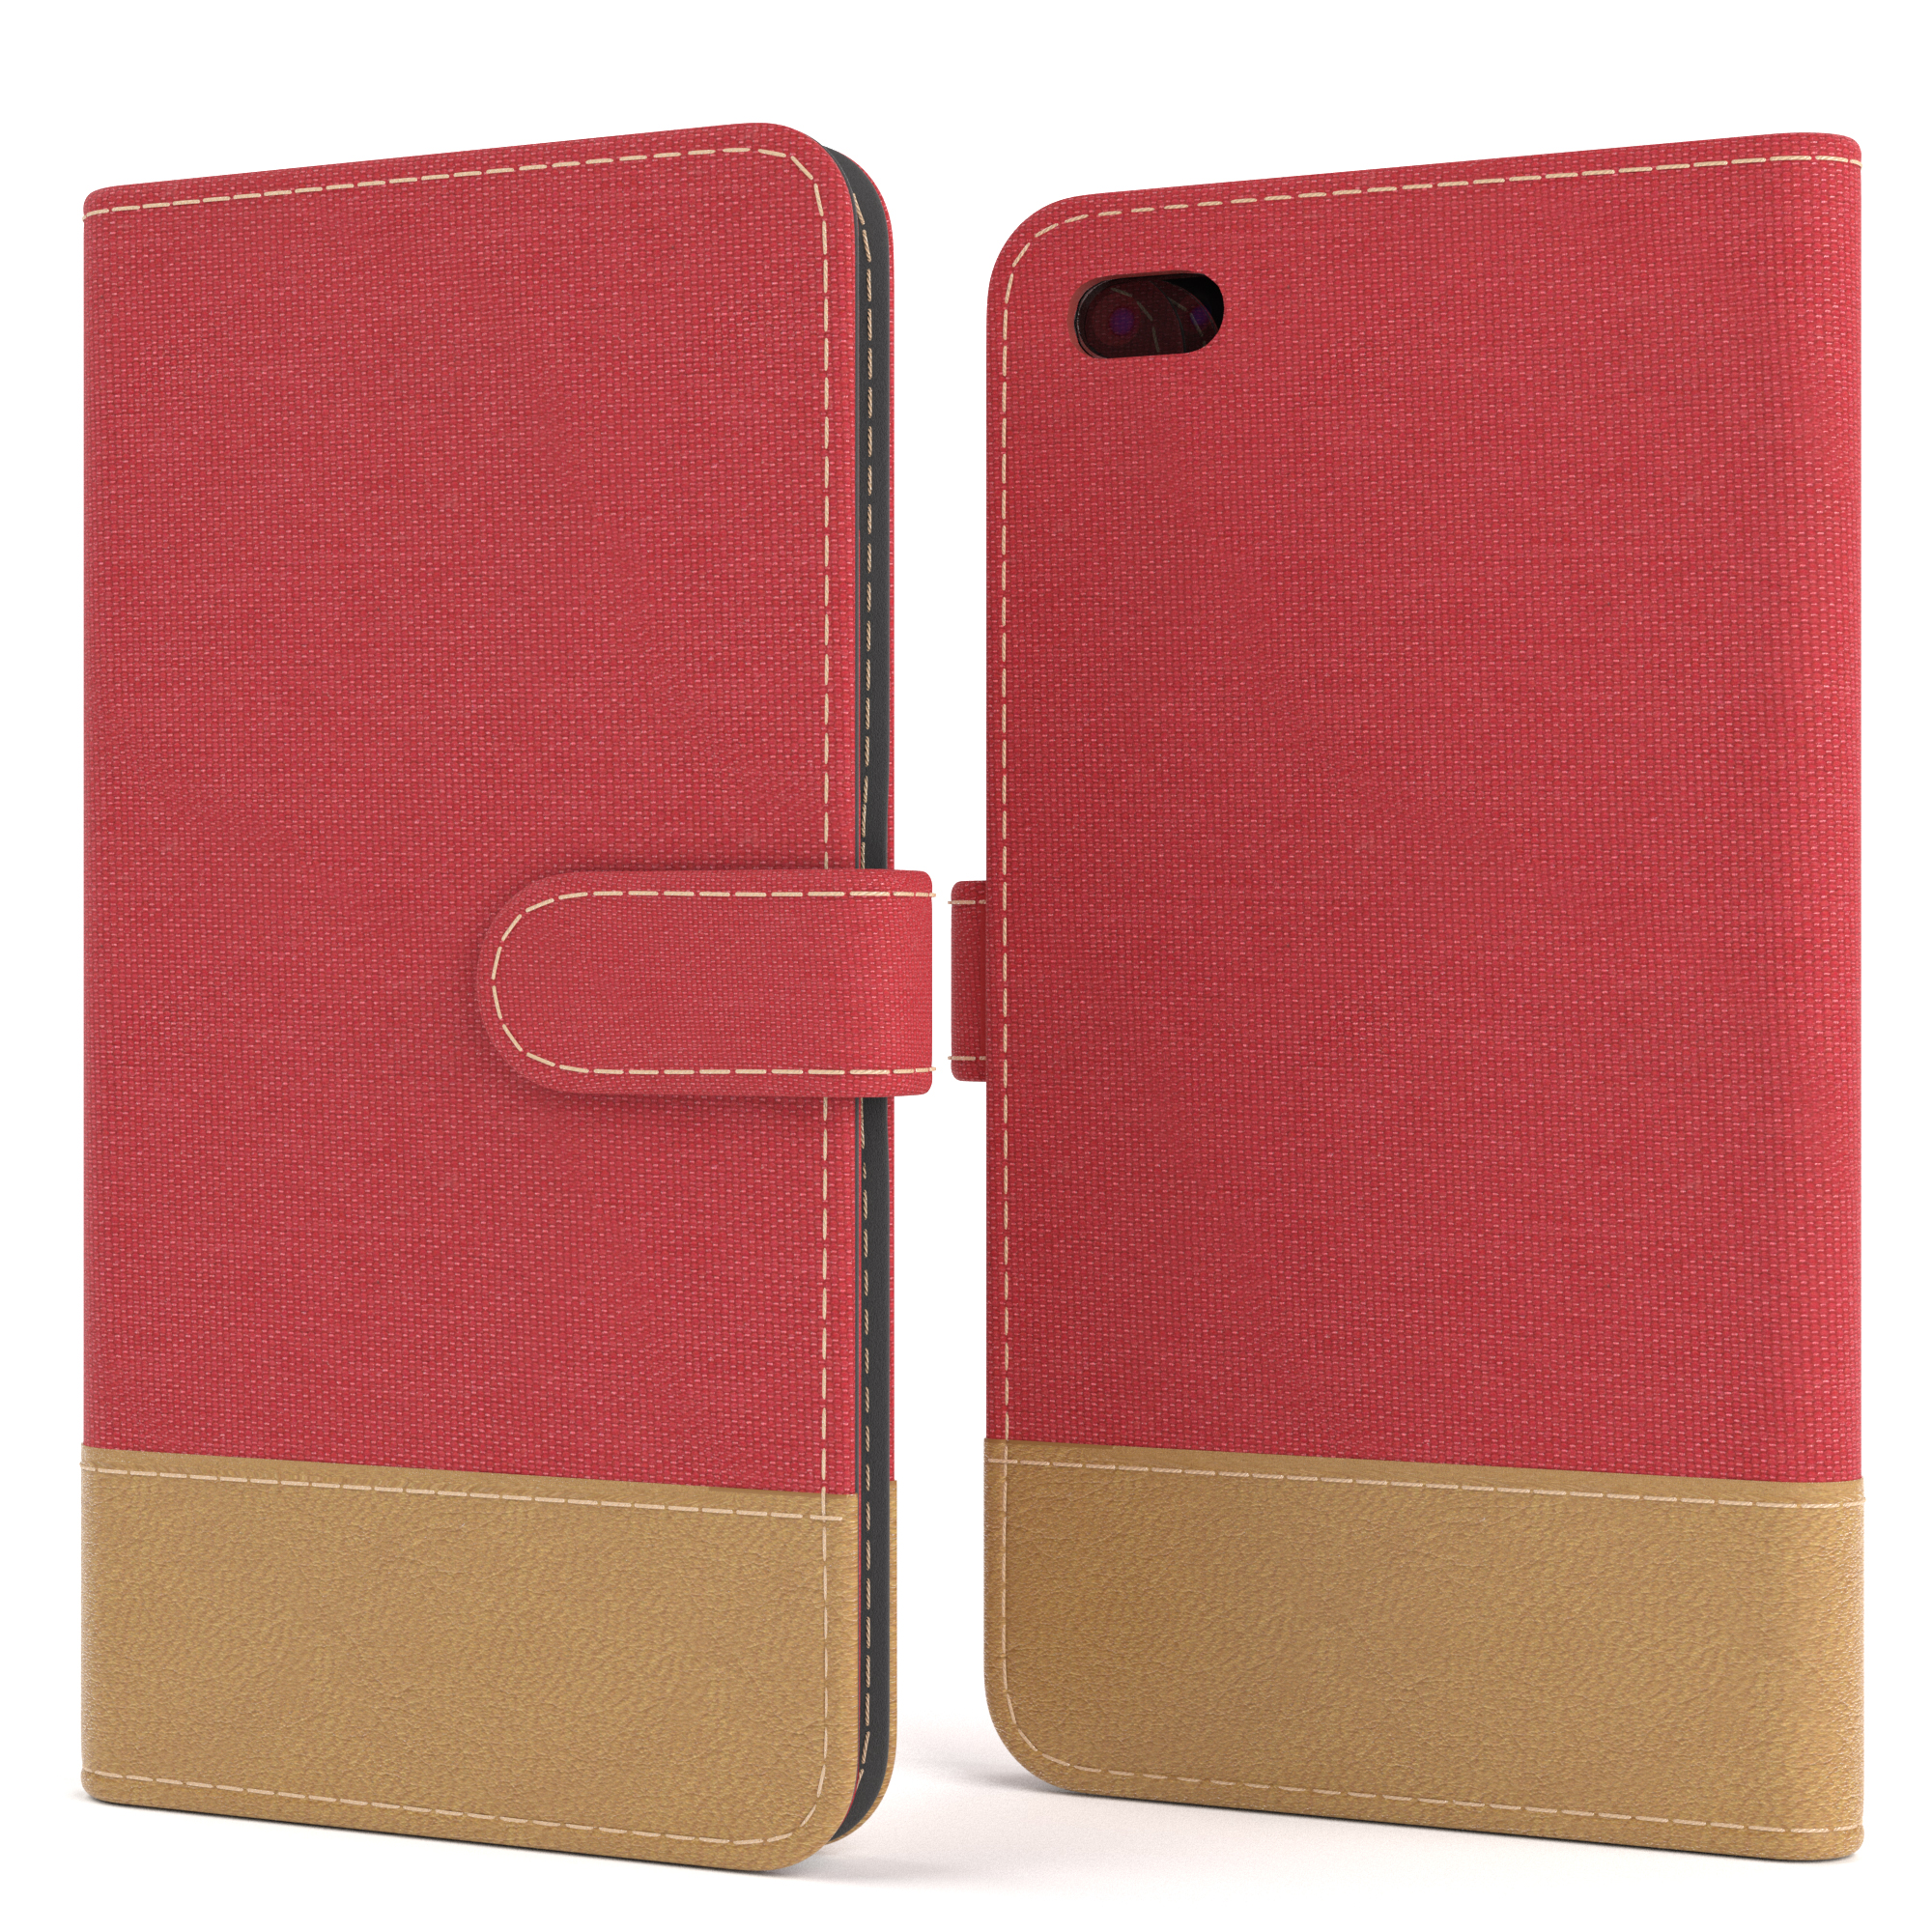 EAZY CASE Bookstyle Klapphülle Jeans Rot Plus, Kartenfach, Plus 7 / 8 Apple, iPhone mit Bookcover